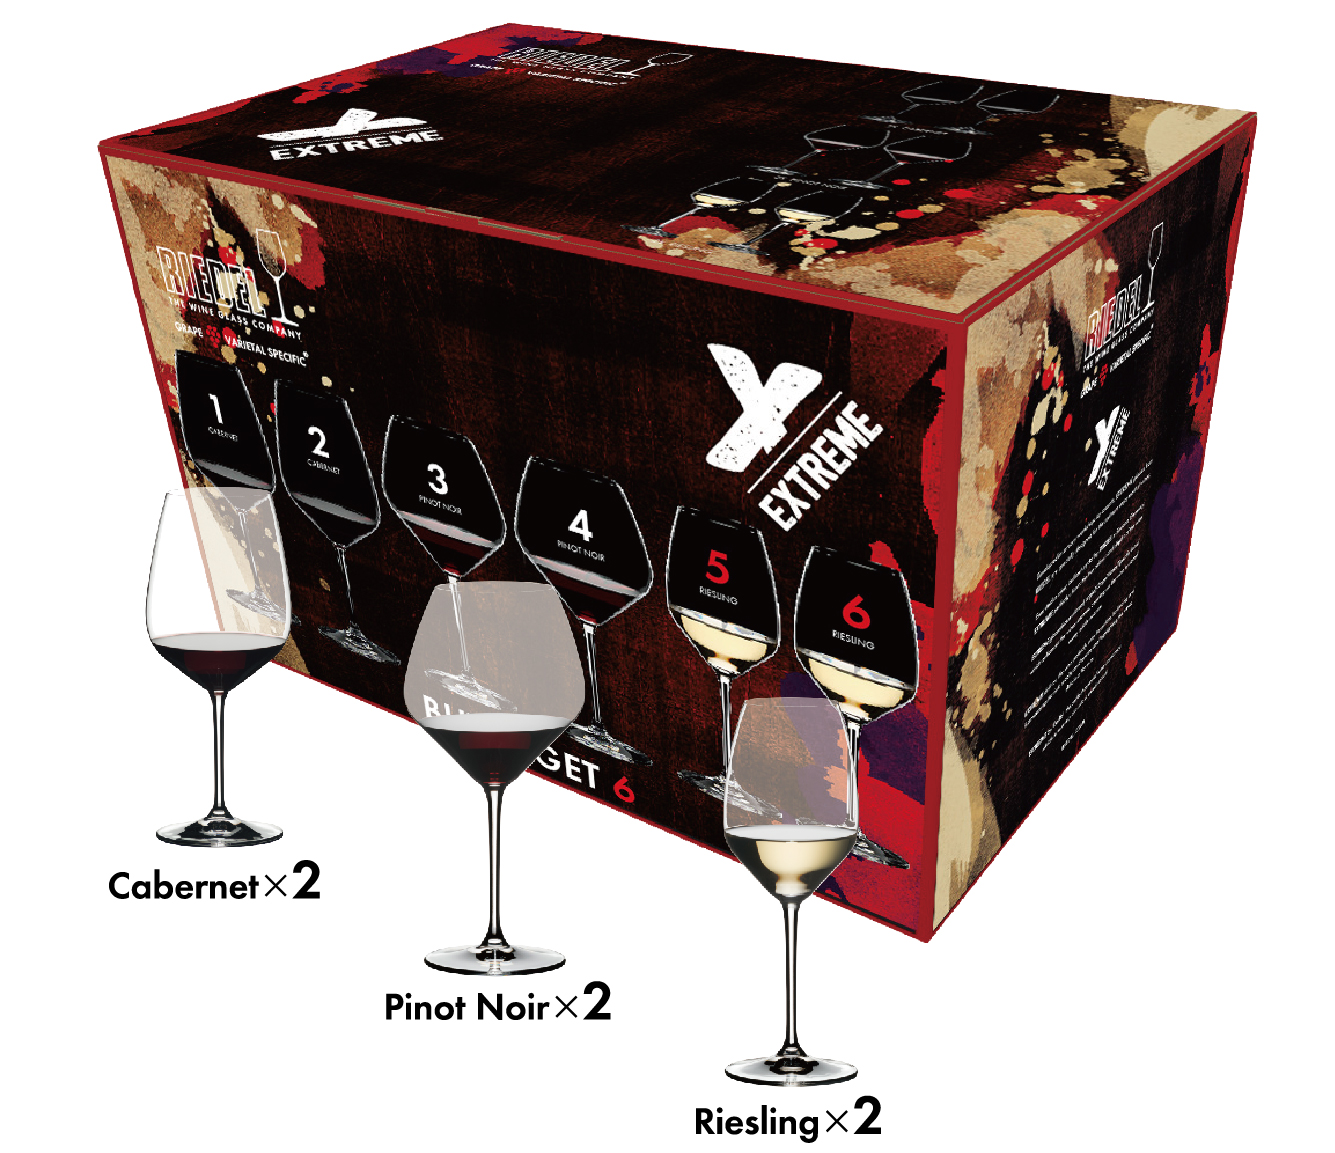 リーデル】4個の価格で6個入り。ワインの香りを最大限に引き出す大きなボウルと耐久性を同時に実現したグラスのバリューパック。｜RSN  Japan株式会社のプレスリリース